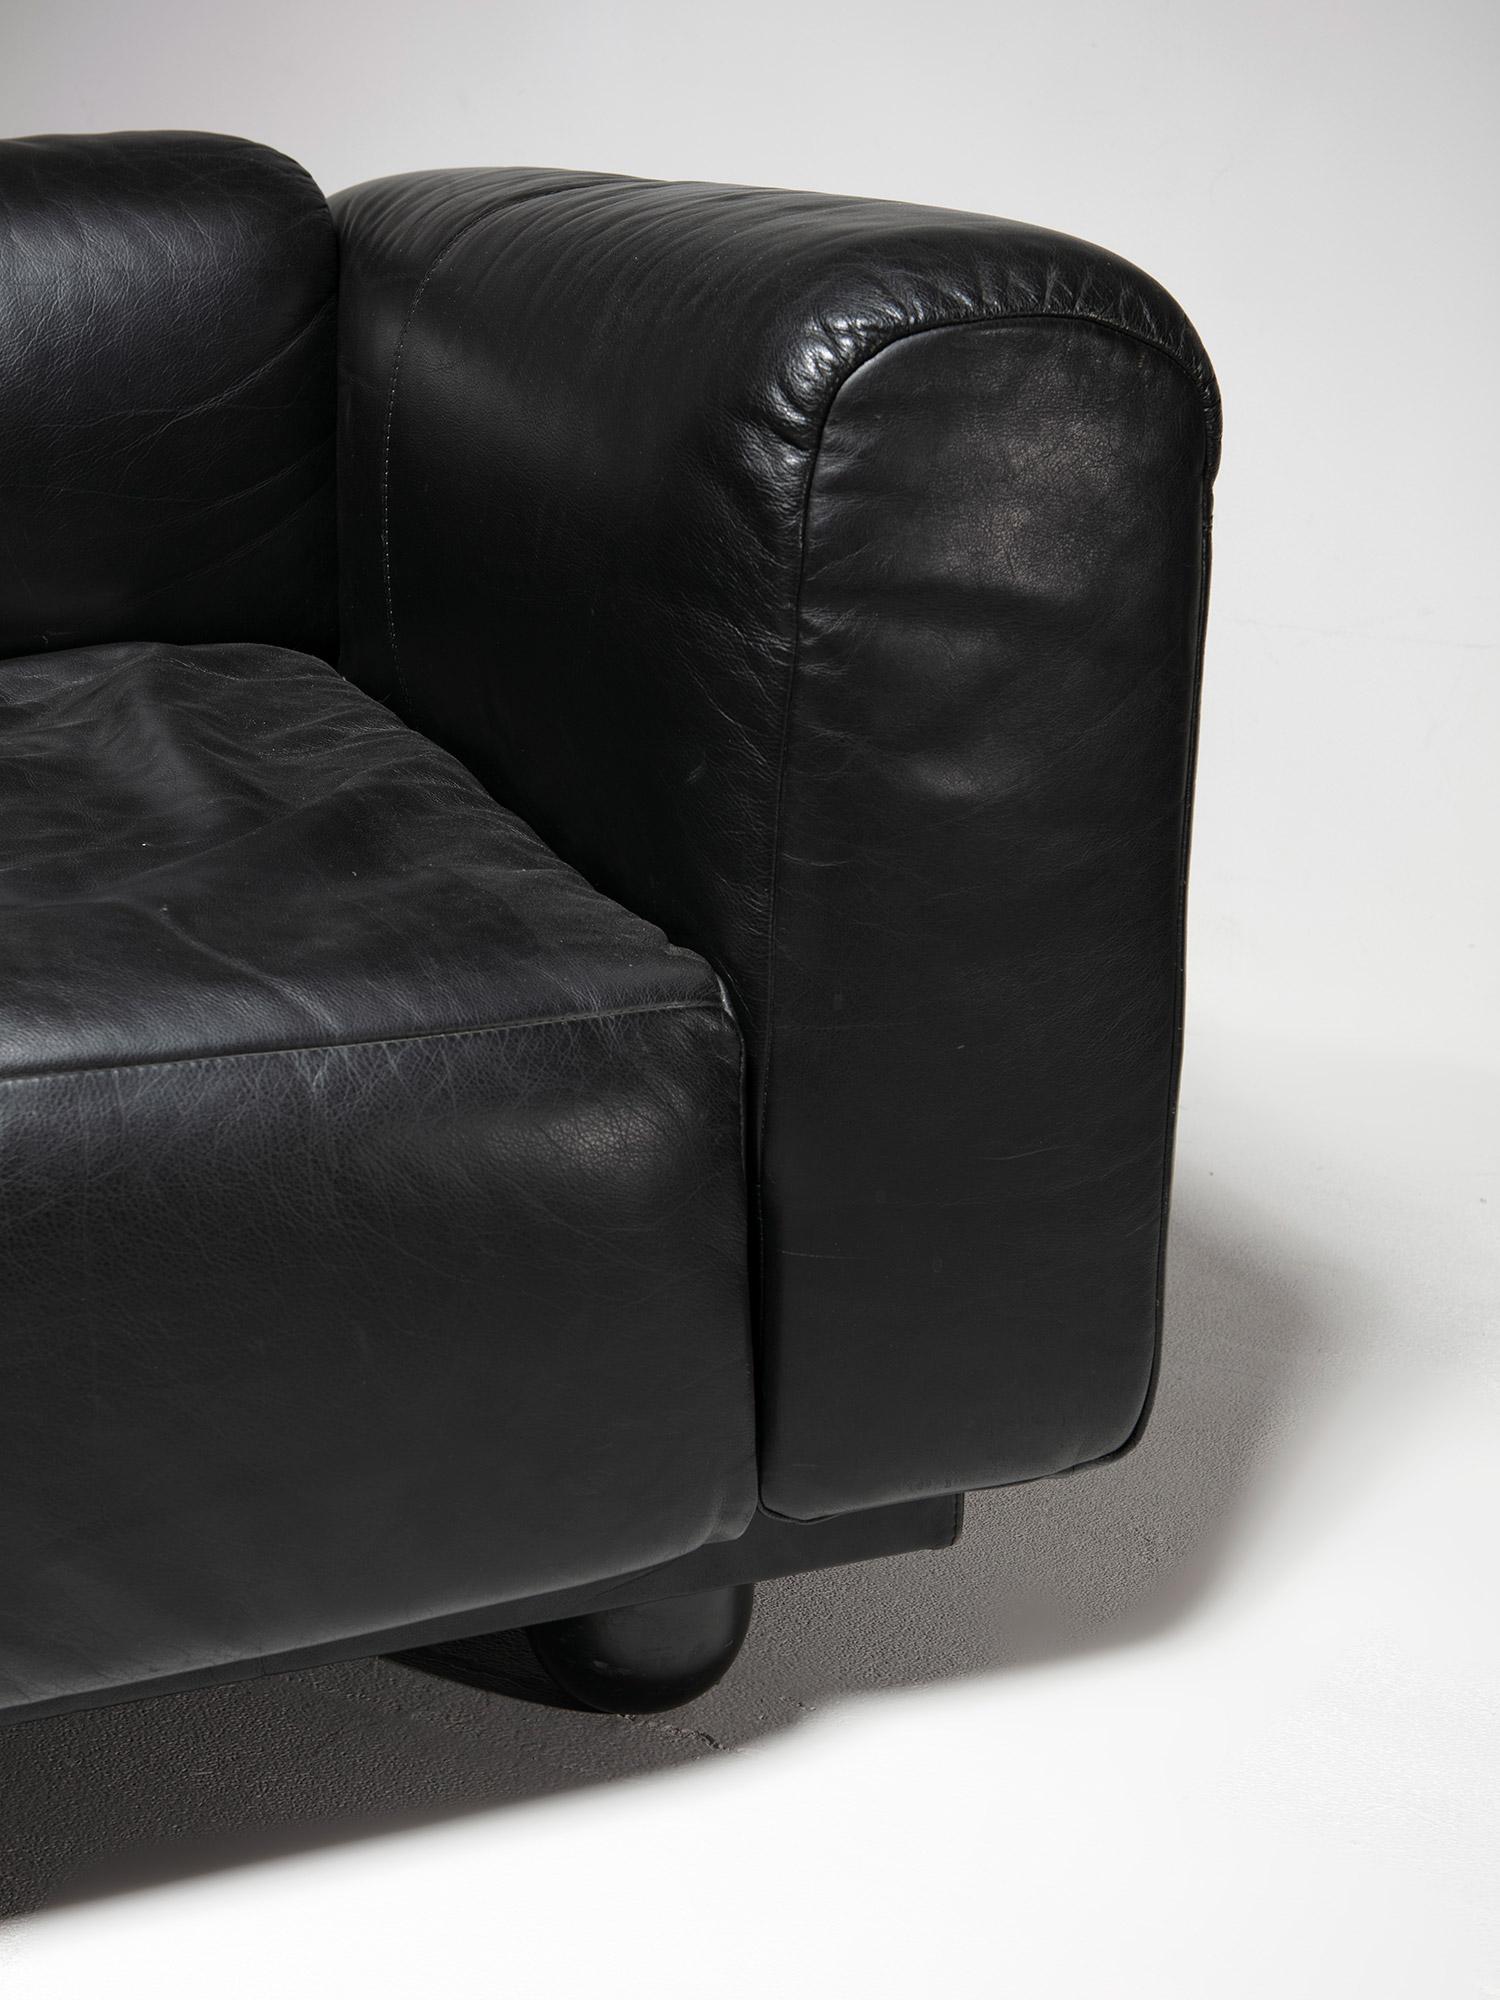 Fin du 20e siècle Chaise longue en cuir noir 